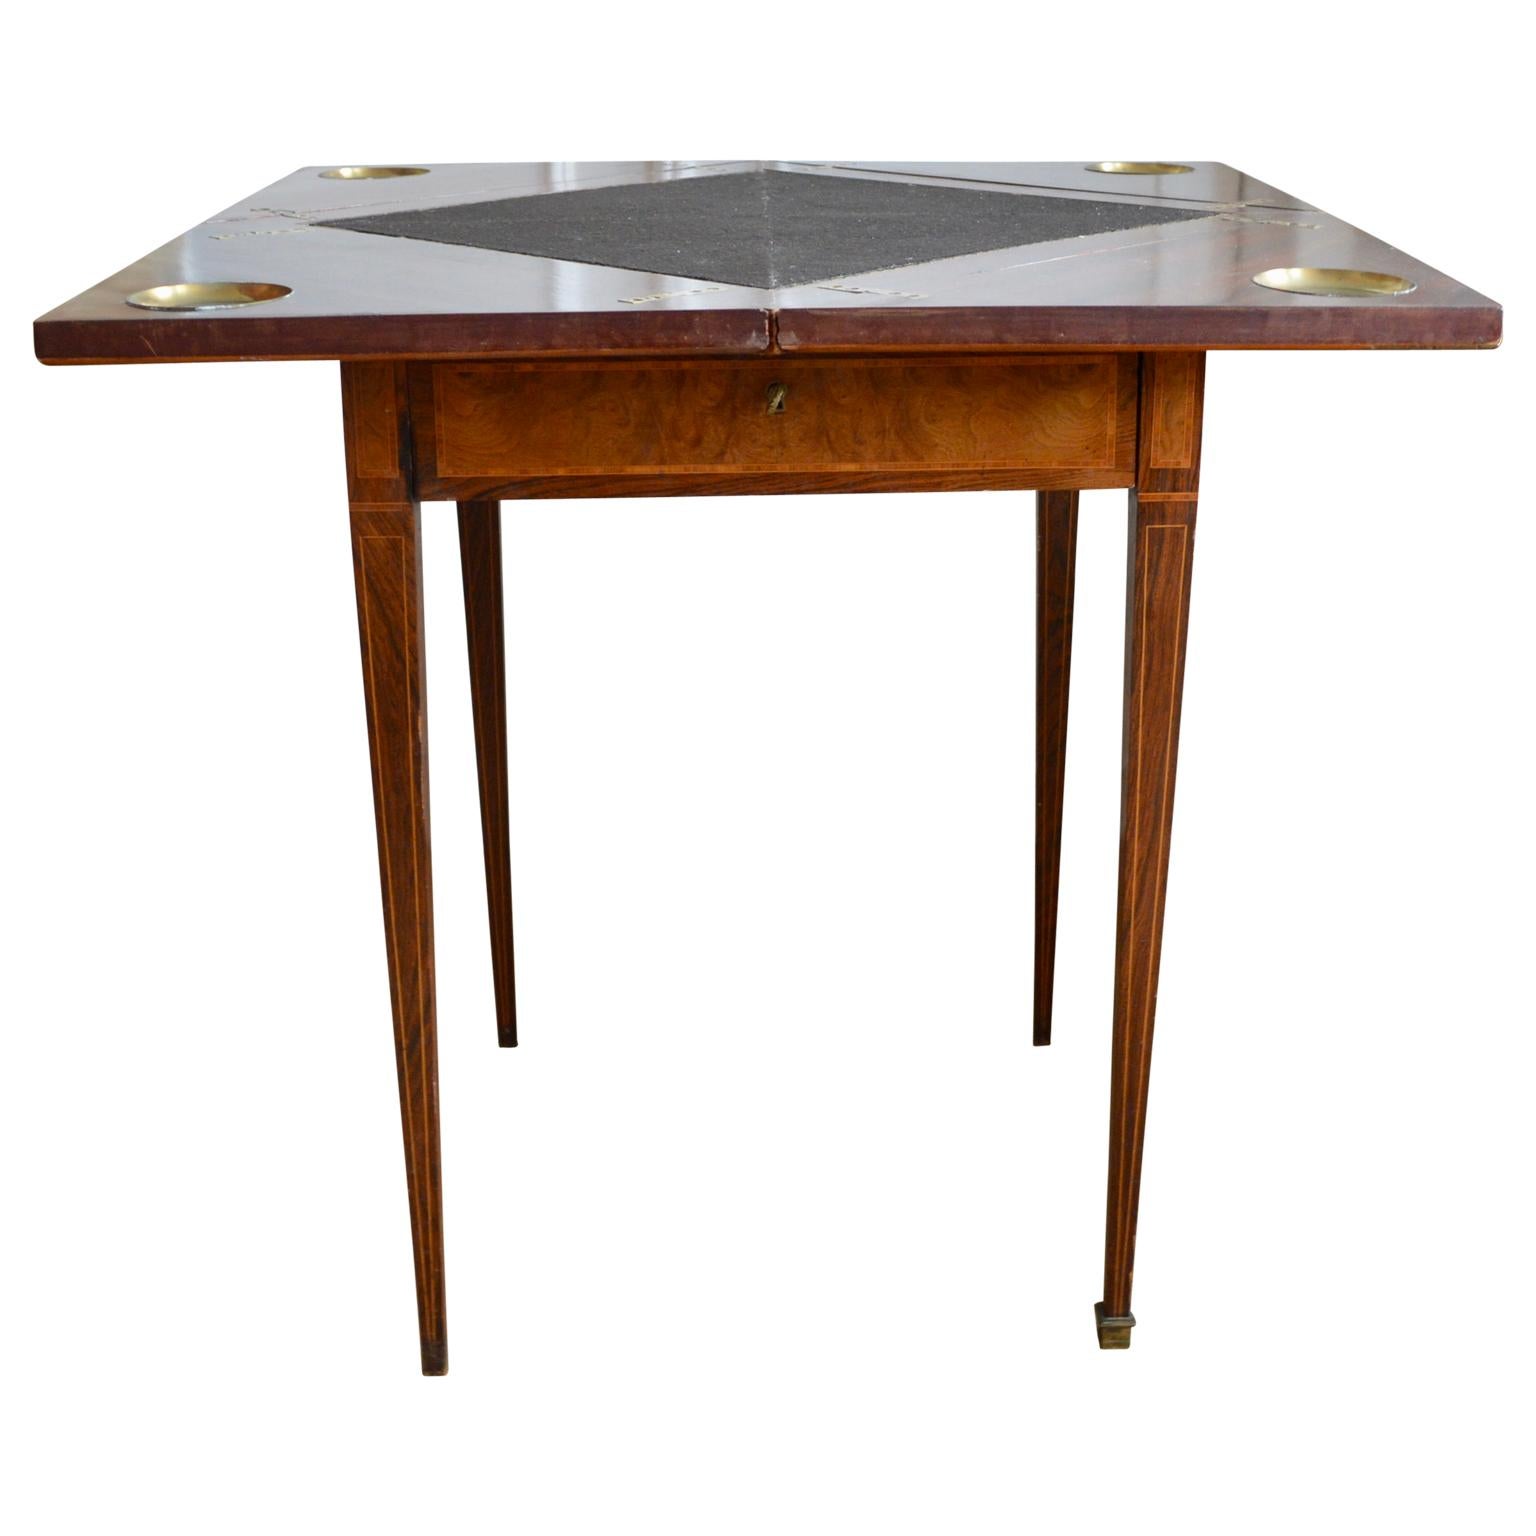 Cette table à cartes à enveloppe en acajou de l'époque édouardienne, vers 1900, est d'une conception très unique, avec un plateau magnifiquement figuré et un bord en satin à bandes croisées. Le plateau pivote et quatre sections s'ouvrent pour